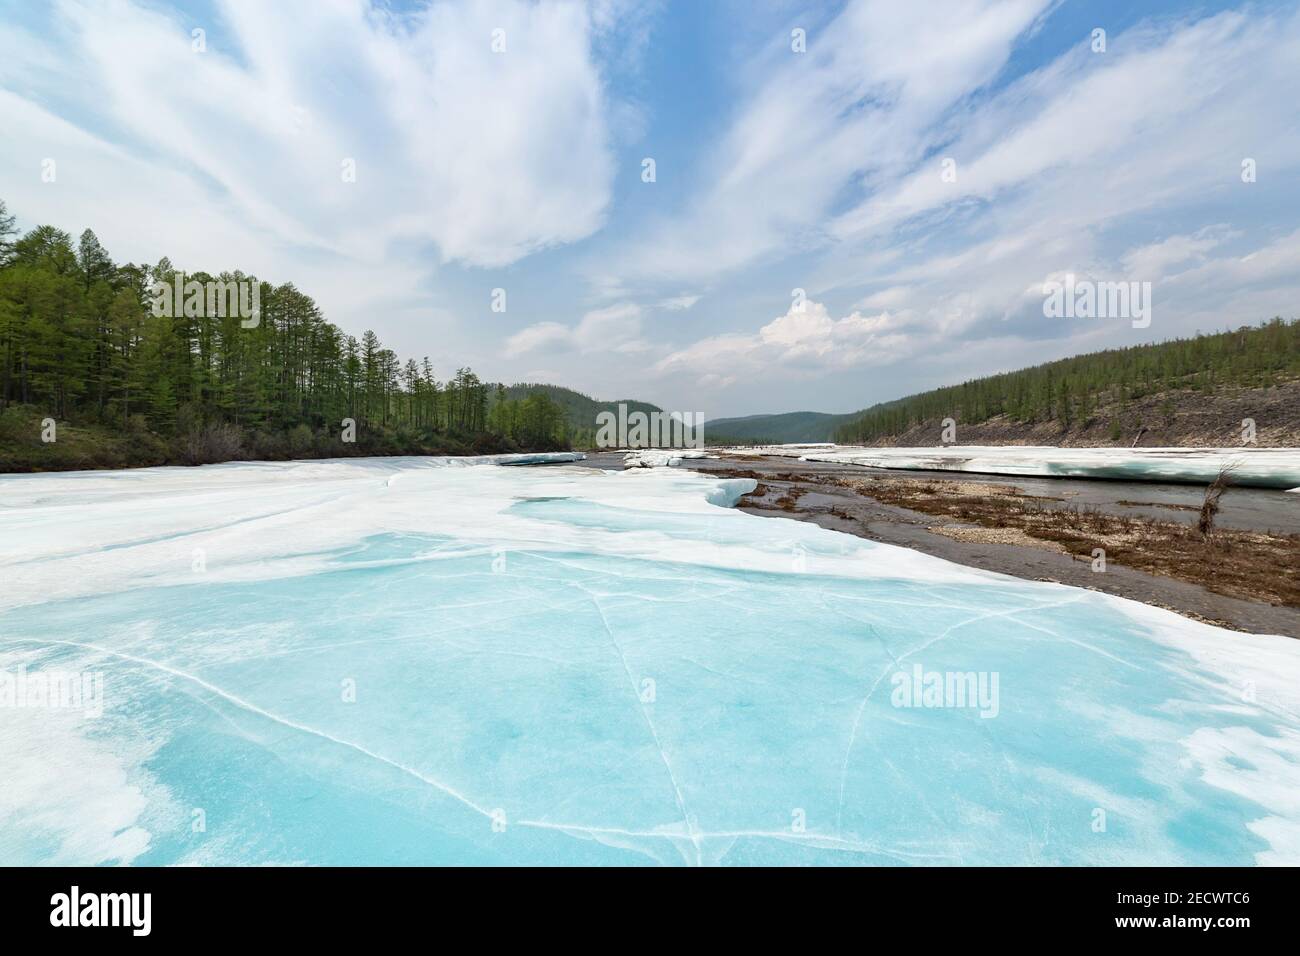 Corps de glace sur la rivière East Neryungri dans le sud de la Iakoutie, en Russie, en juin Banque D'Images